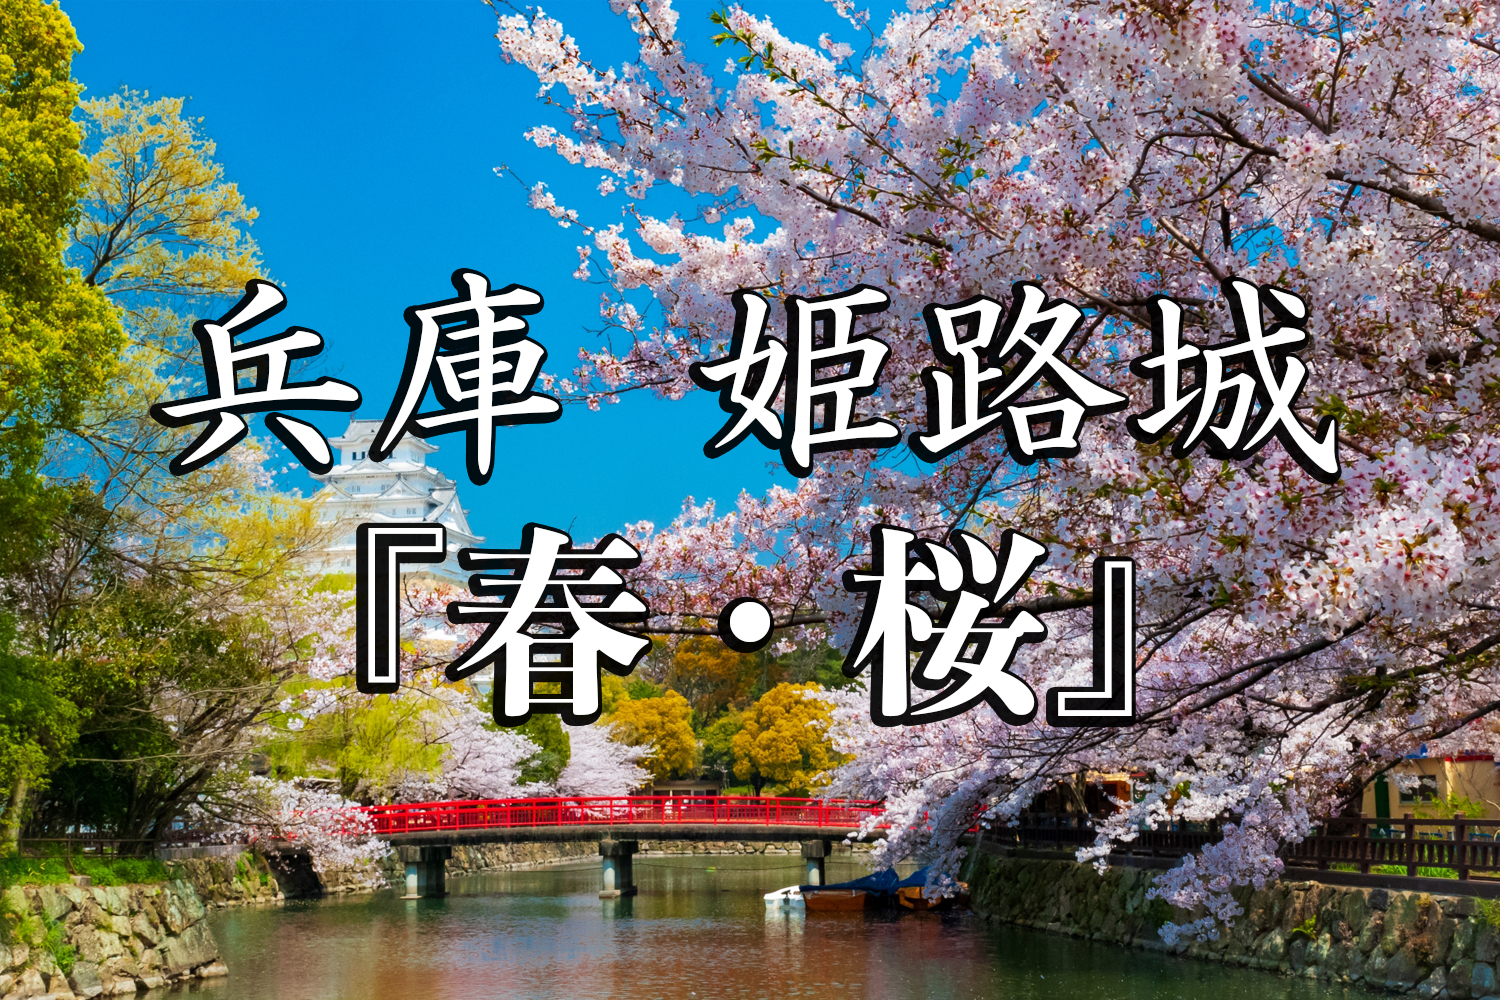 兵庫県 姫路城 桜と城の景色が美しい春におすすめのスポット 写真の紹介 アクセス情報や駐車場情報など 写真や映像で紹介する関西 近畿の絶景カメラ 観光スポット